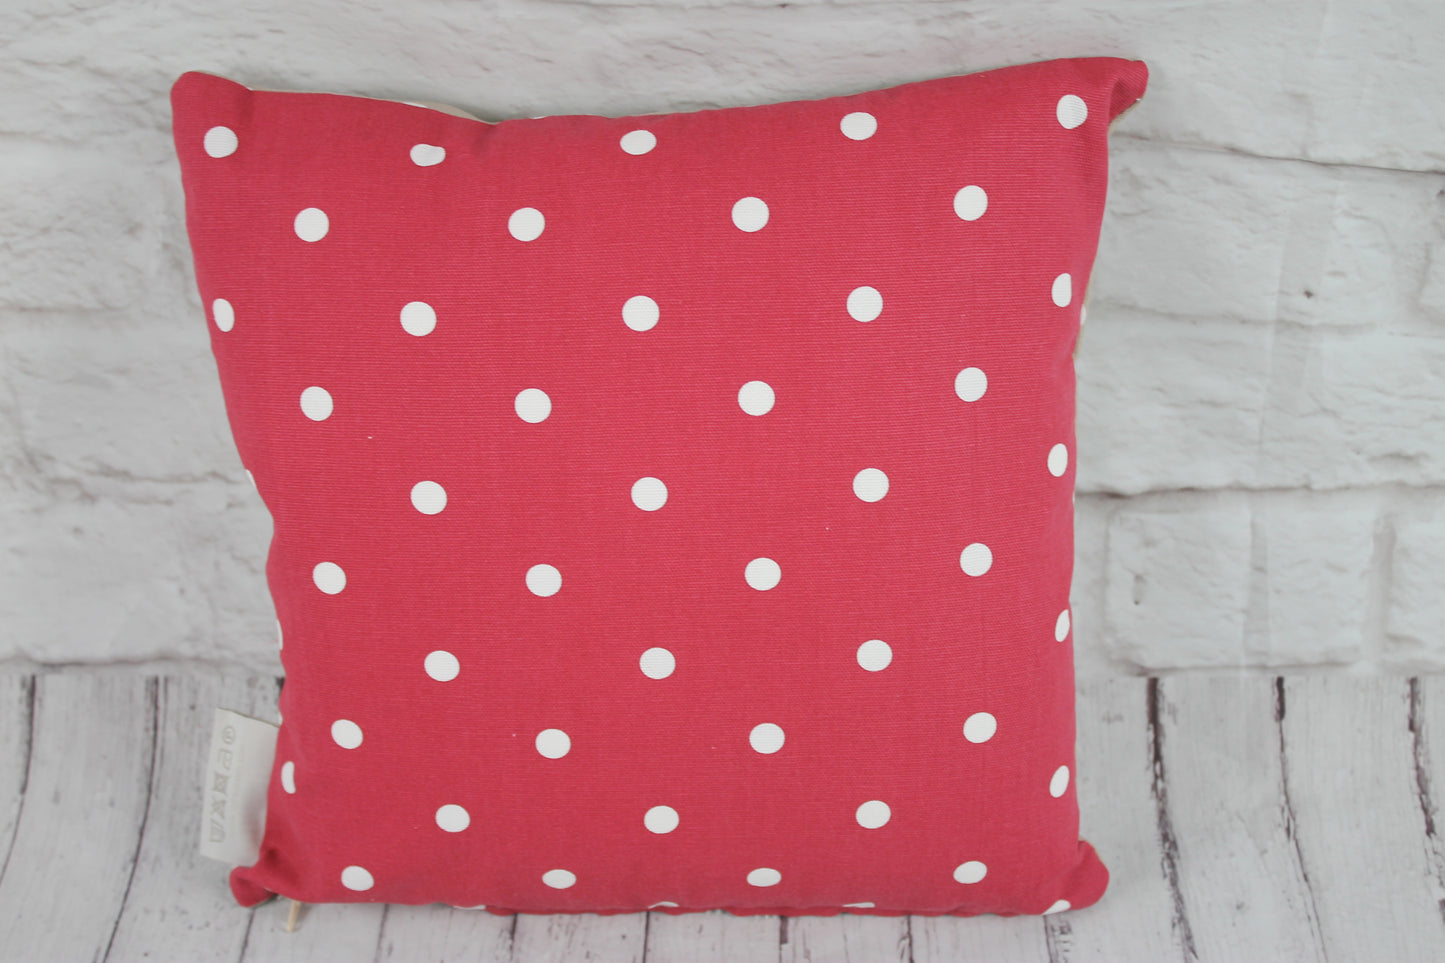 Robin Christmas Cushion- 16" Nadolig Llawen - Lizzie Dixon Designs